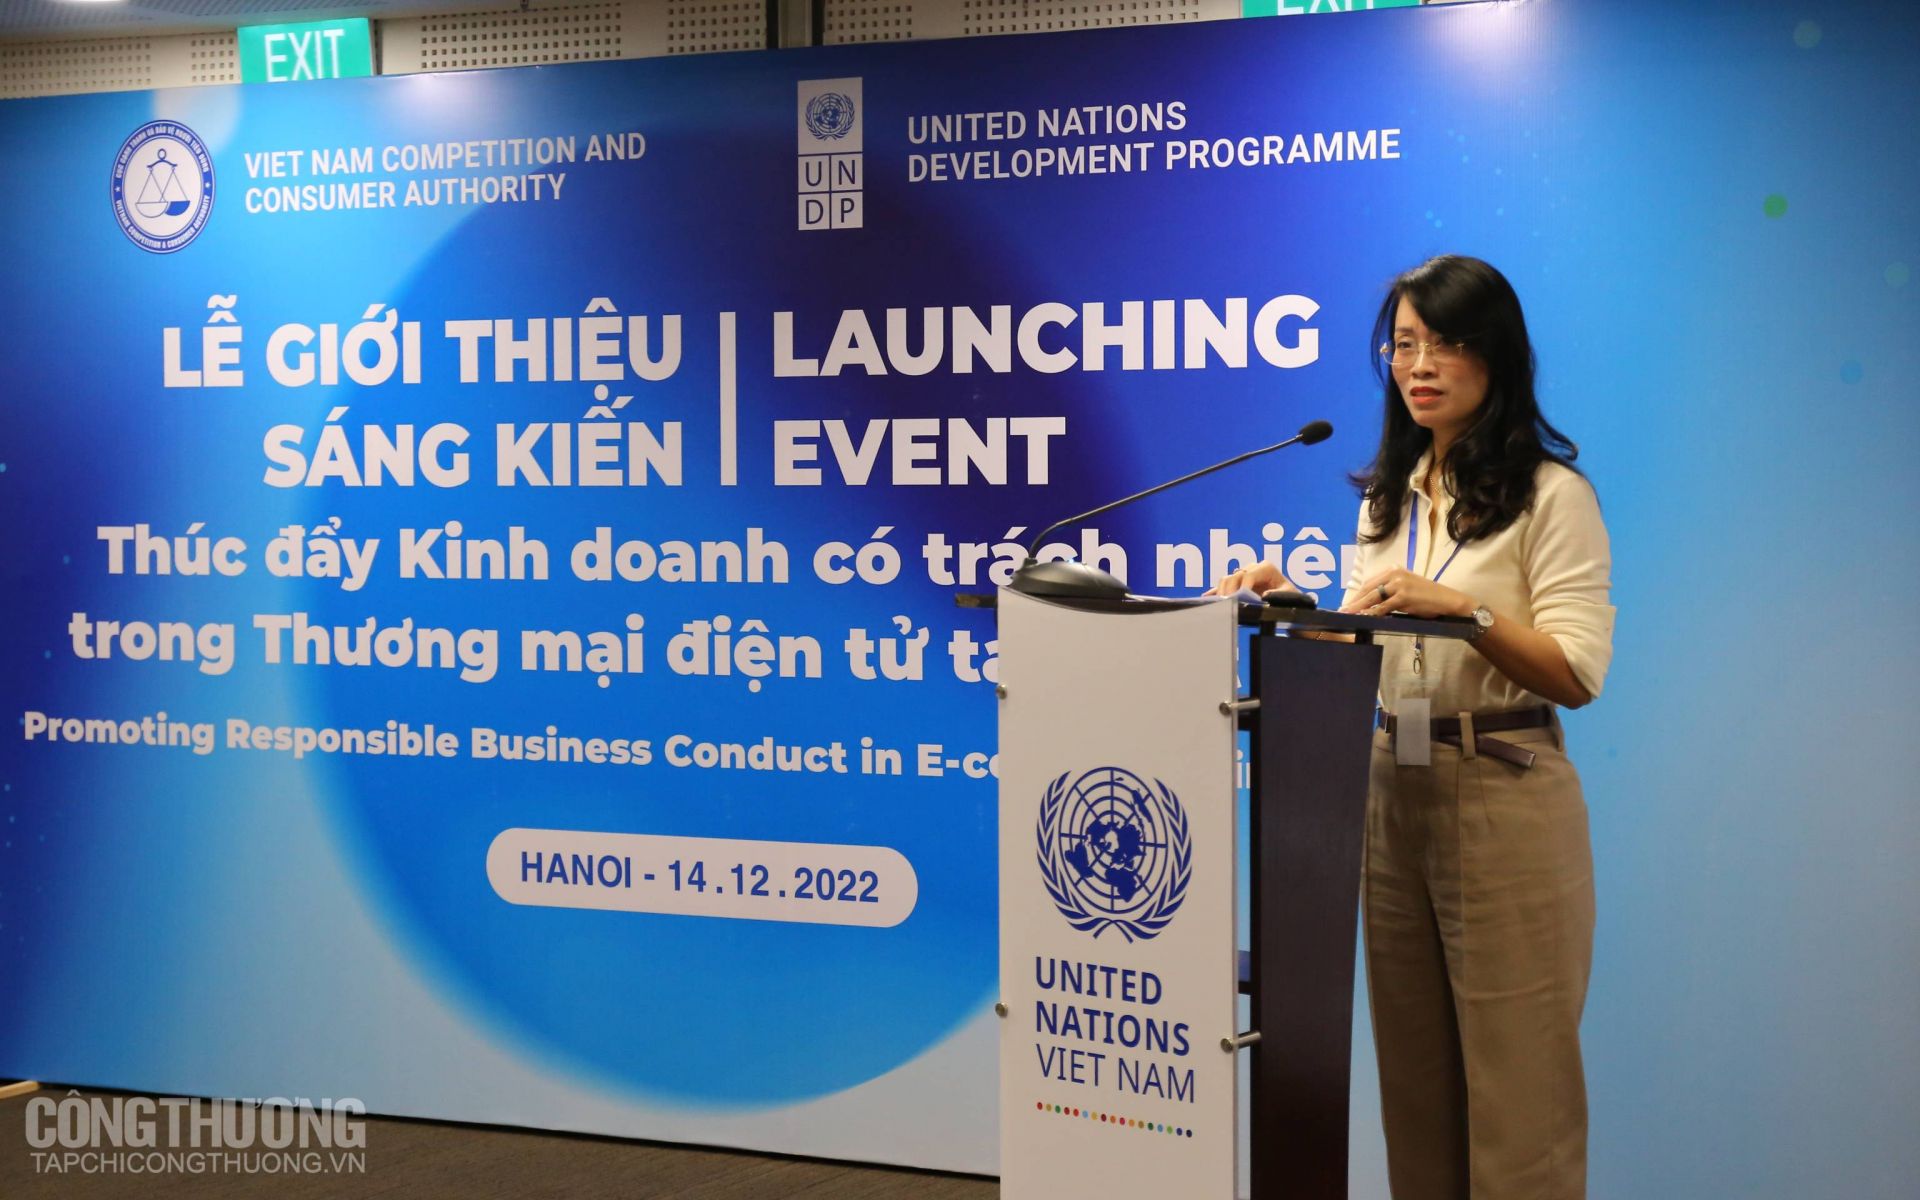 Thúc đẩy kinh doanh có trách nhiệm vì người tiêu dùng Việt Nam